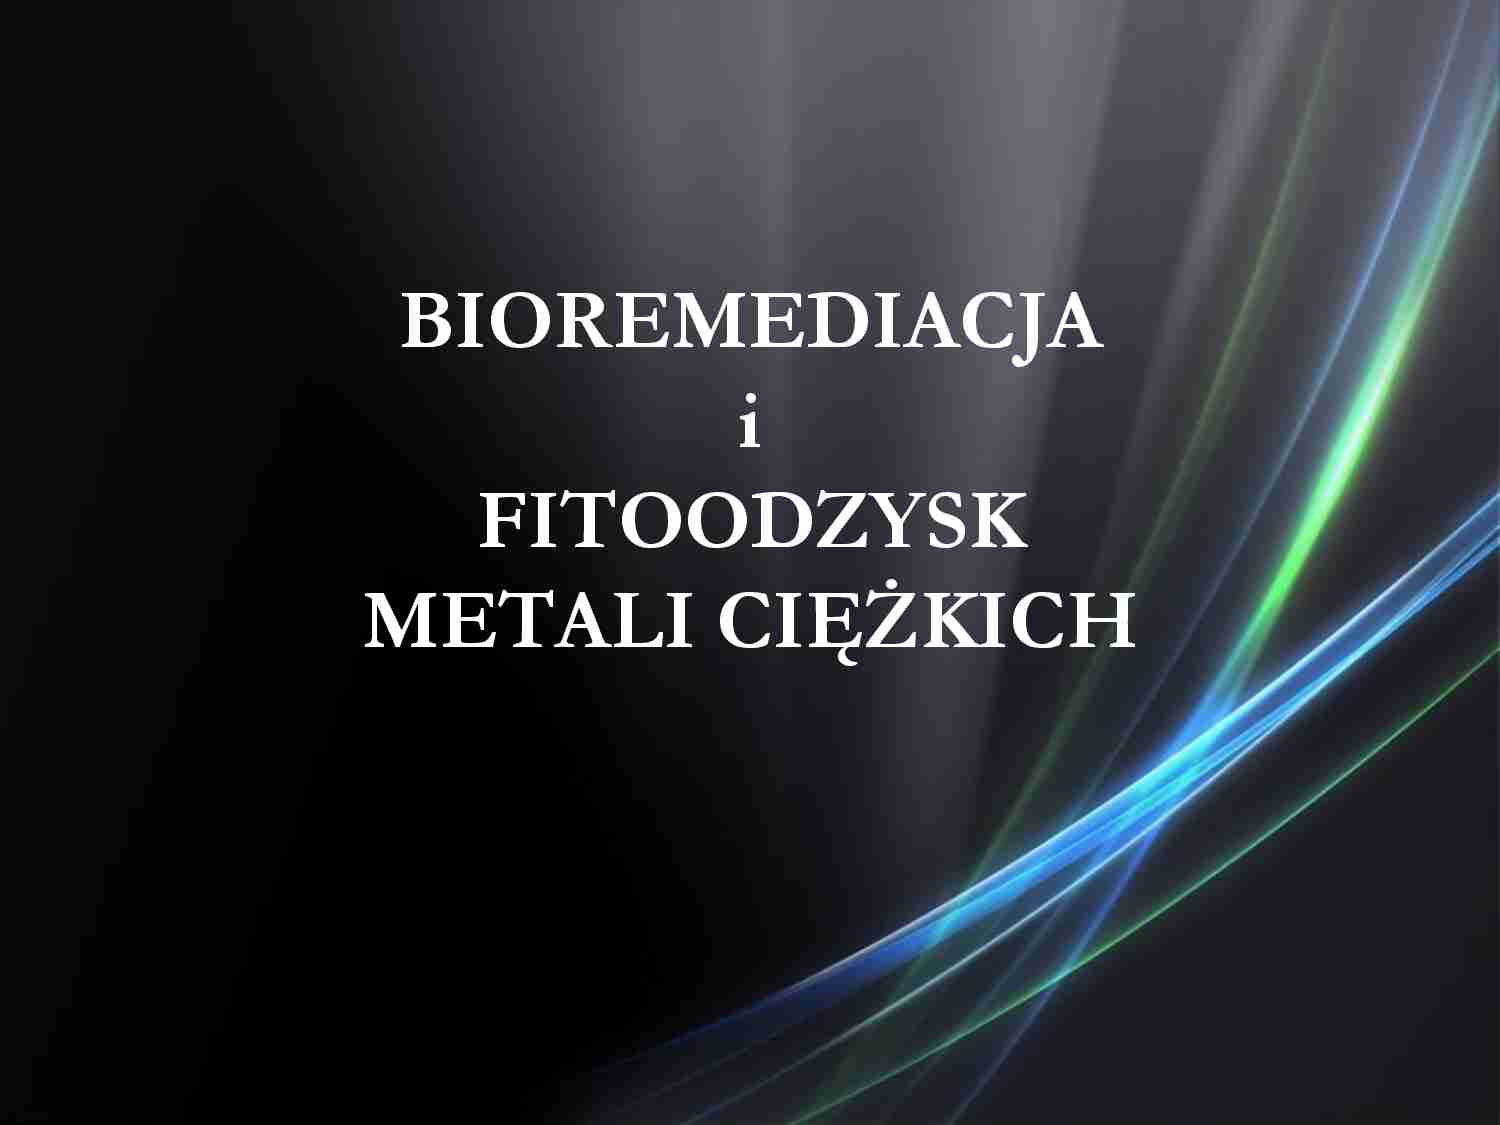 Bioremedacja i fitoodzysk metali ciężkich - strona 1